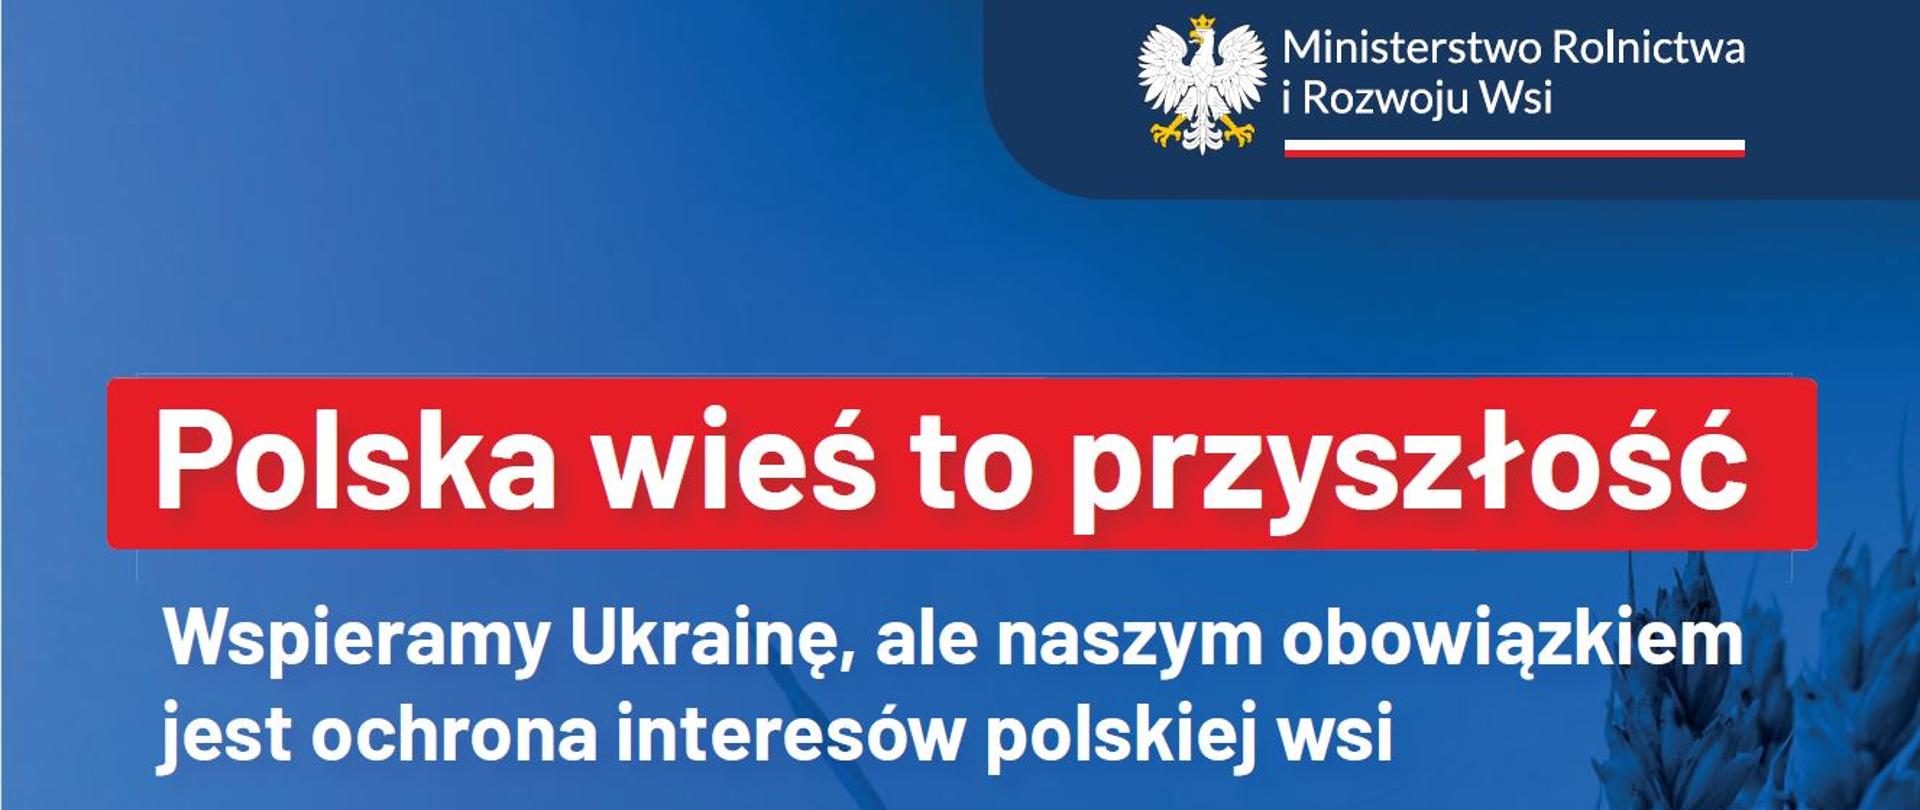 MRiRW Polska wieś to przyszłość